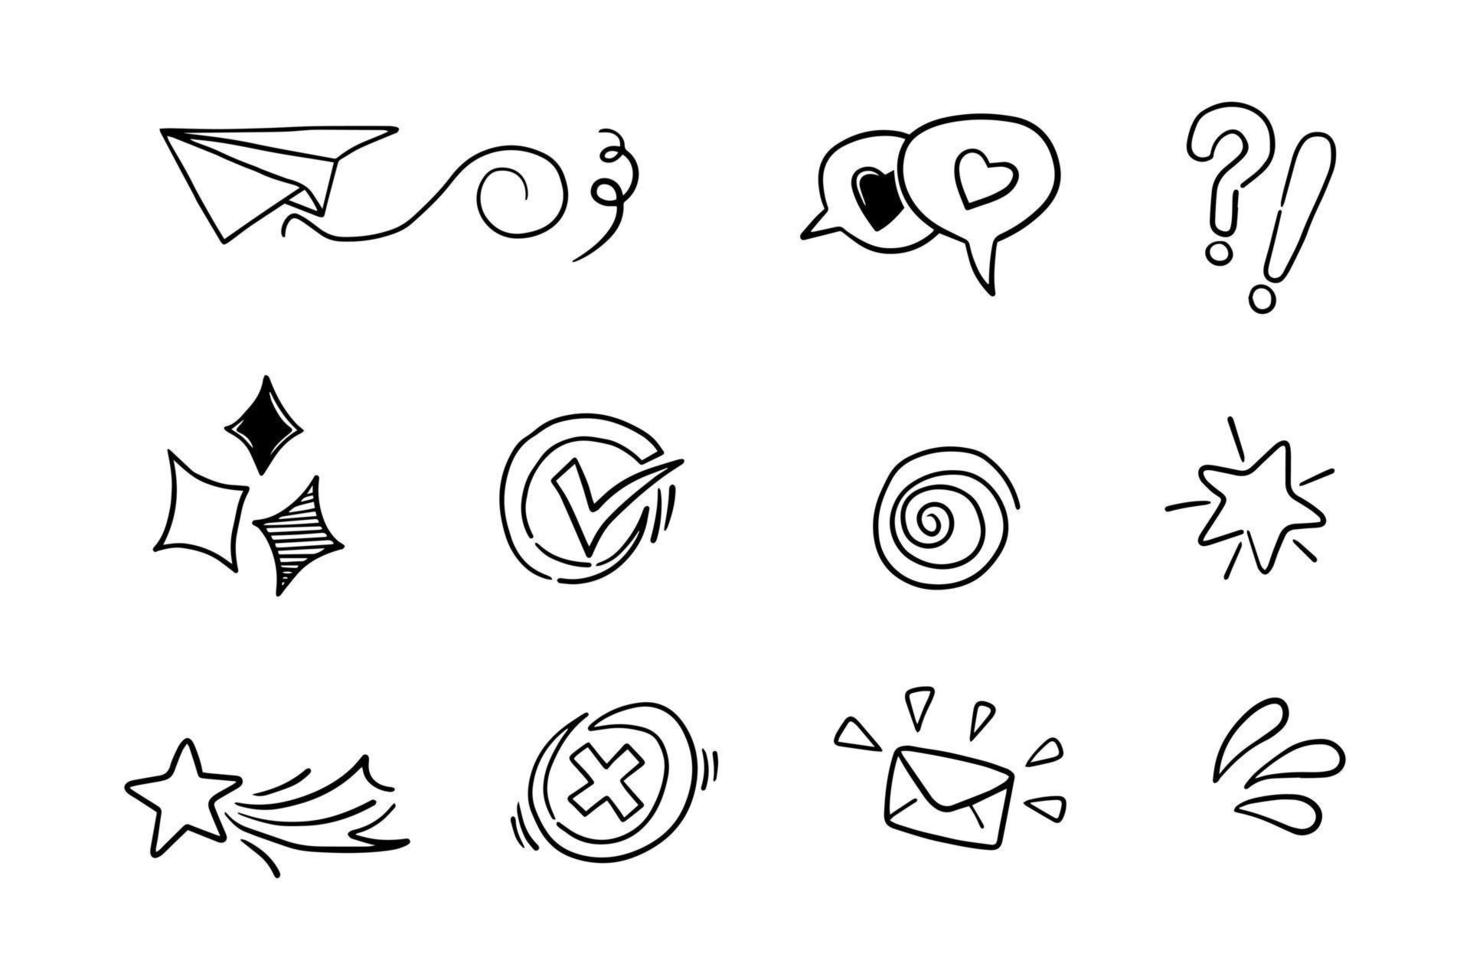 een verzameling van doodles voor ontwerp doeleinden zo net zo papier schepen, sterren, liefde, vraag merken, controleren merken enz vector